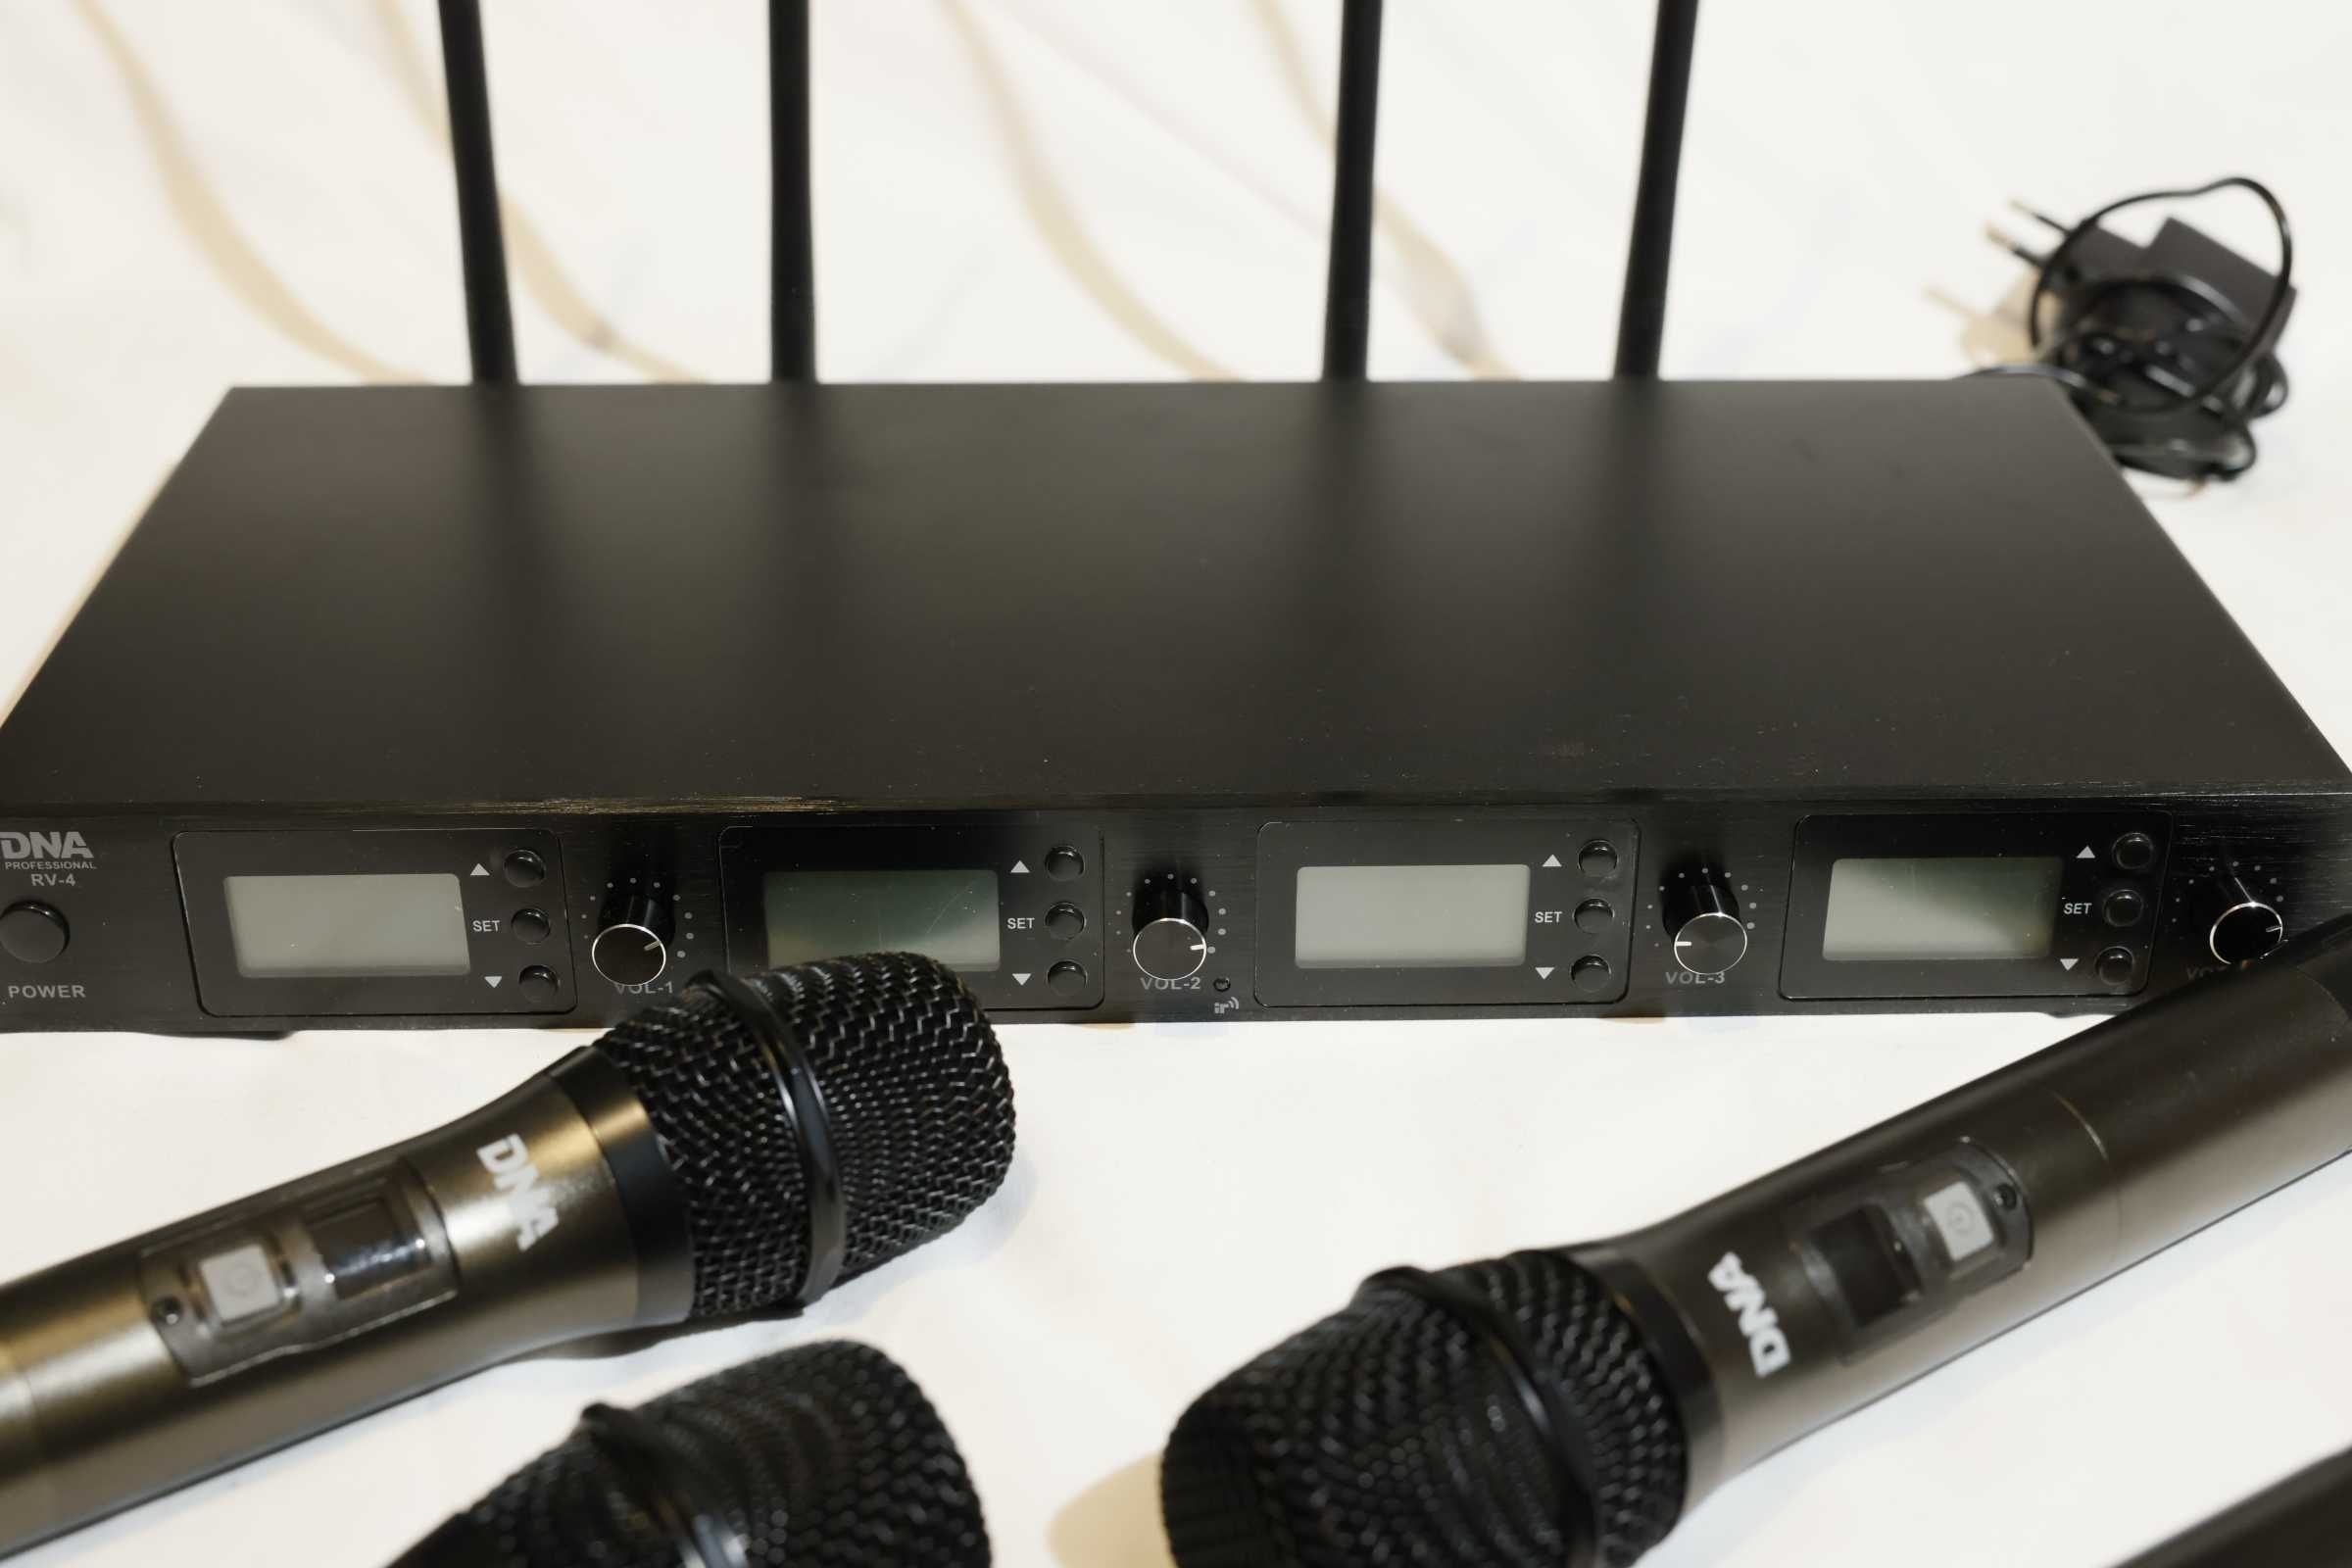 DNA RV-4 system bezprzewodowy 4 mikrofonow, stan jak nowe